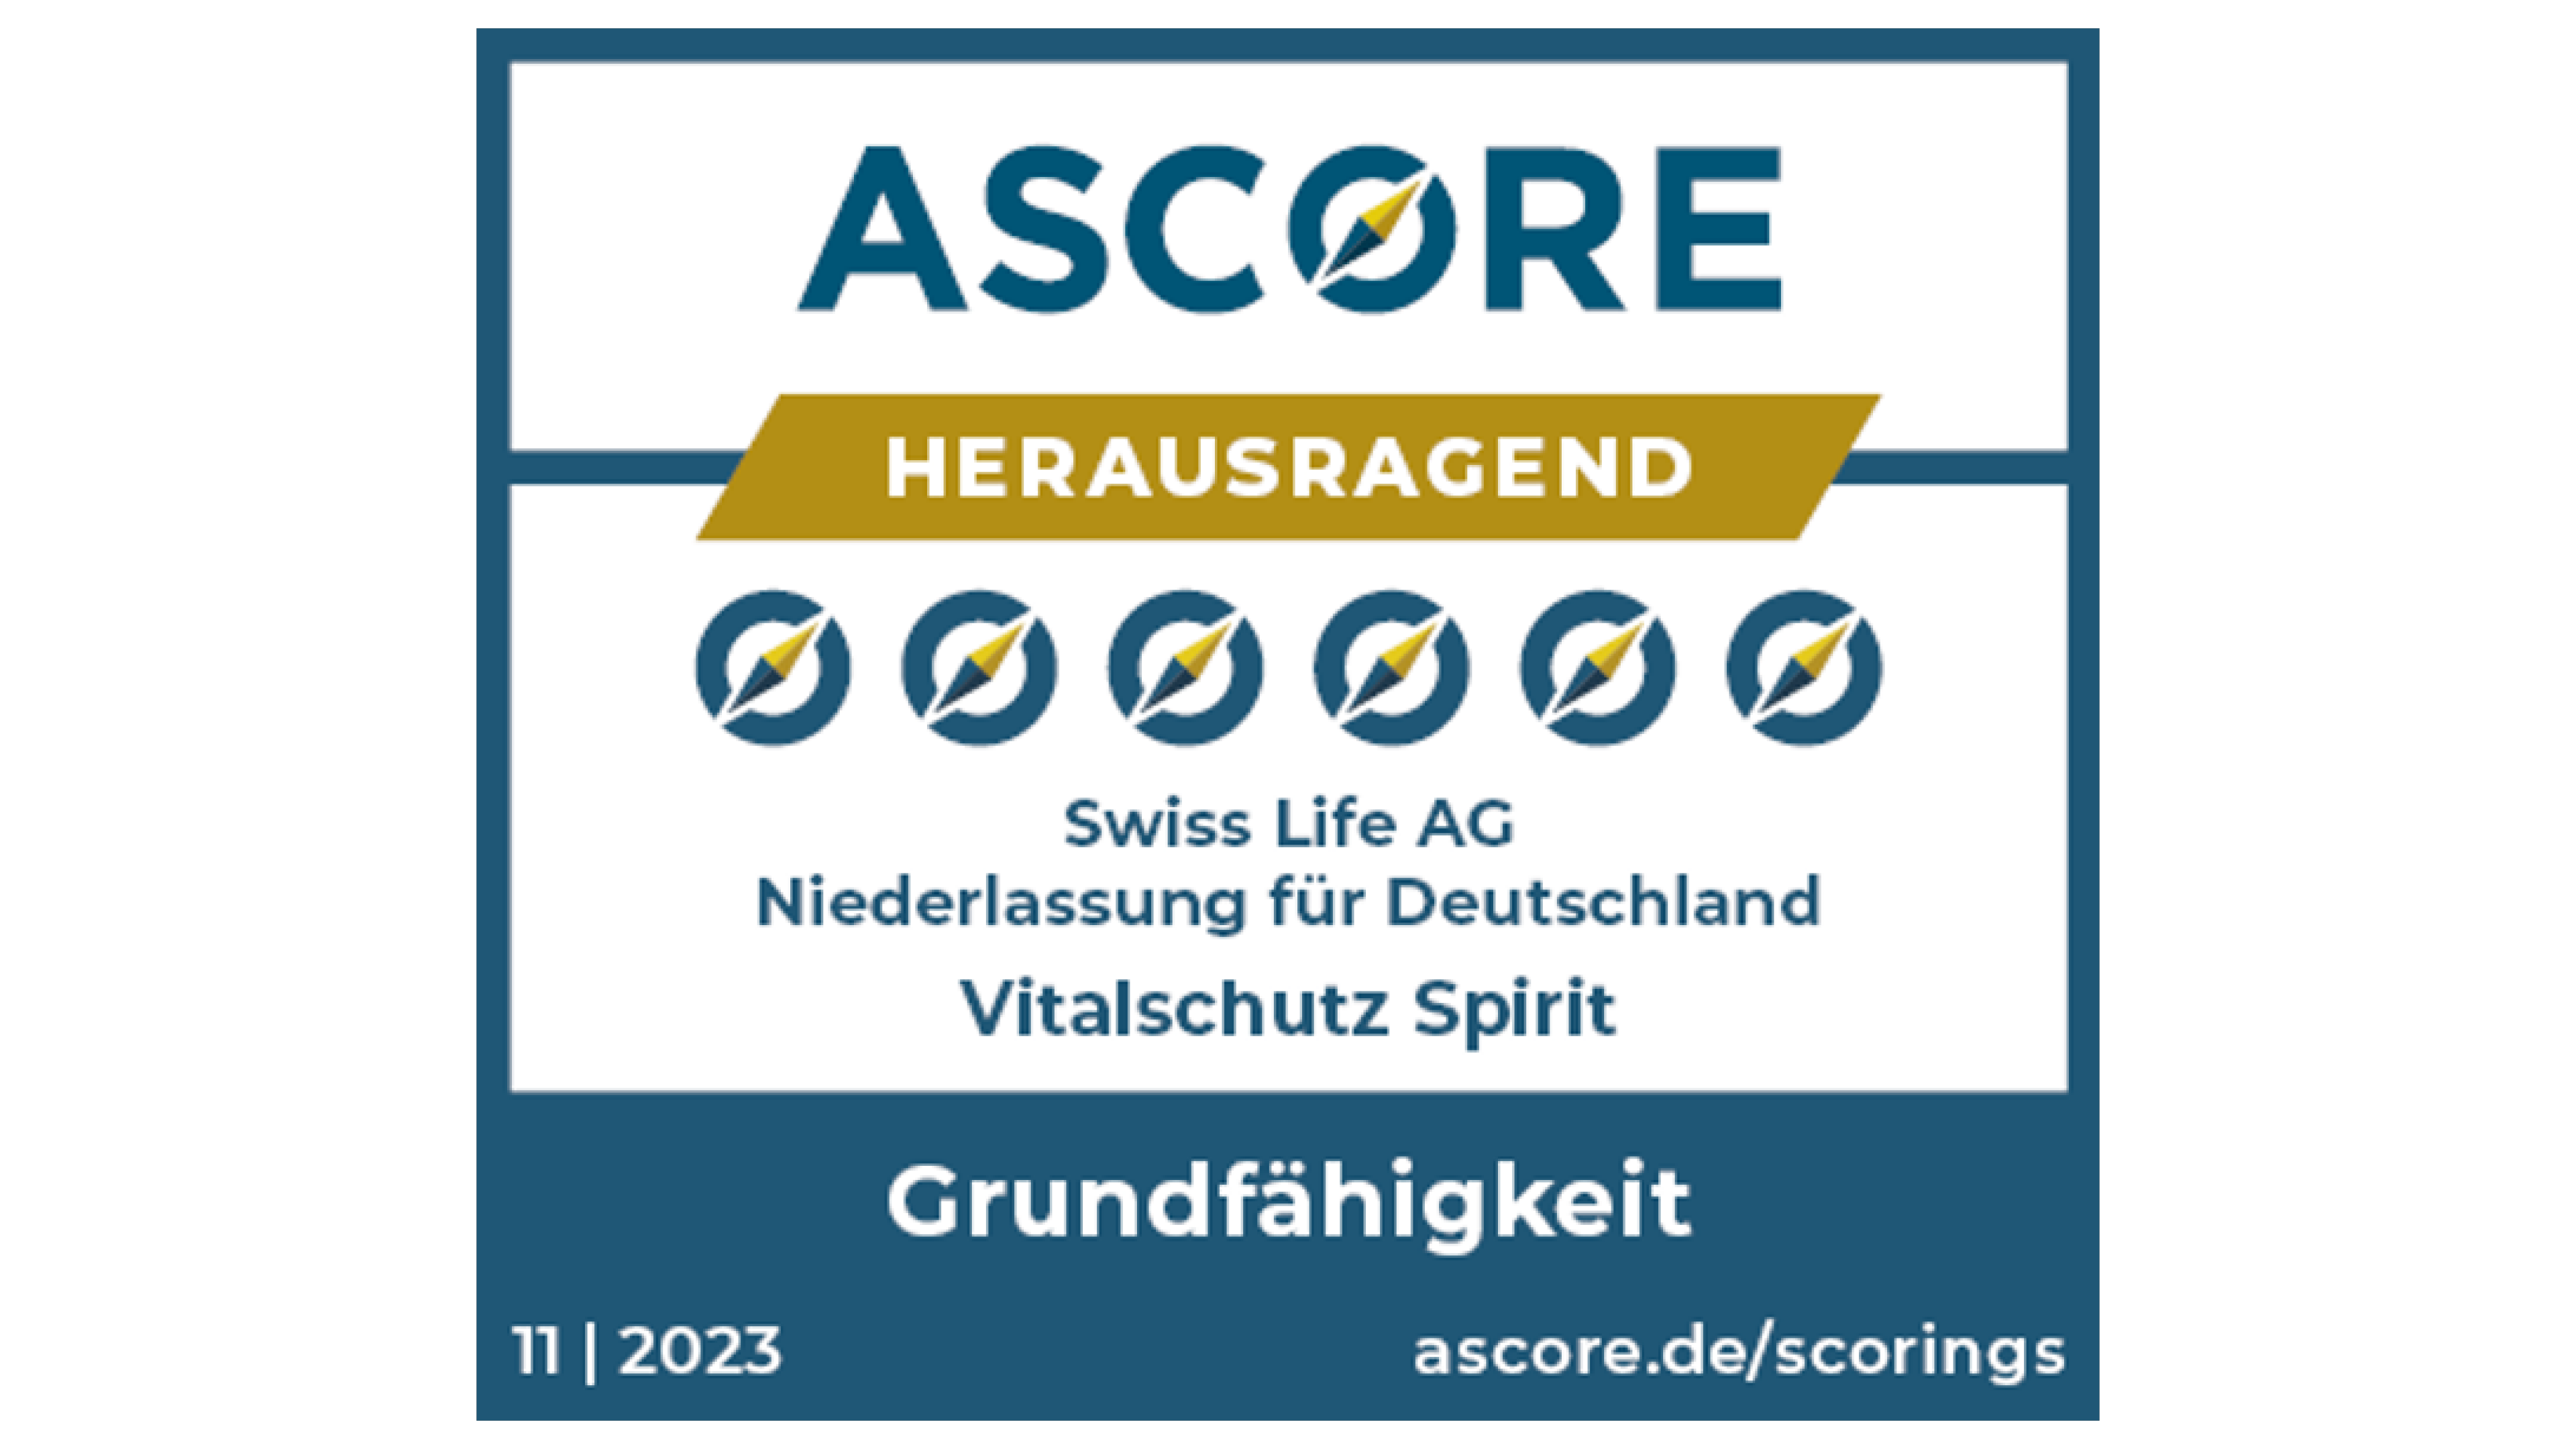 Herausragende Auszeichnung von Ascore für Swiss Life Grundfähigkeitsversicherung